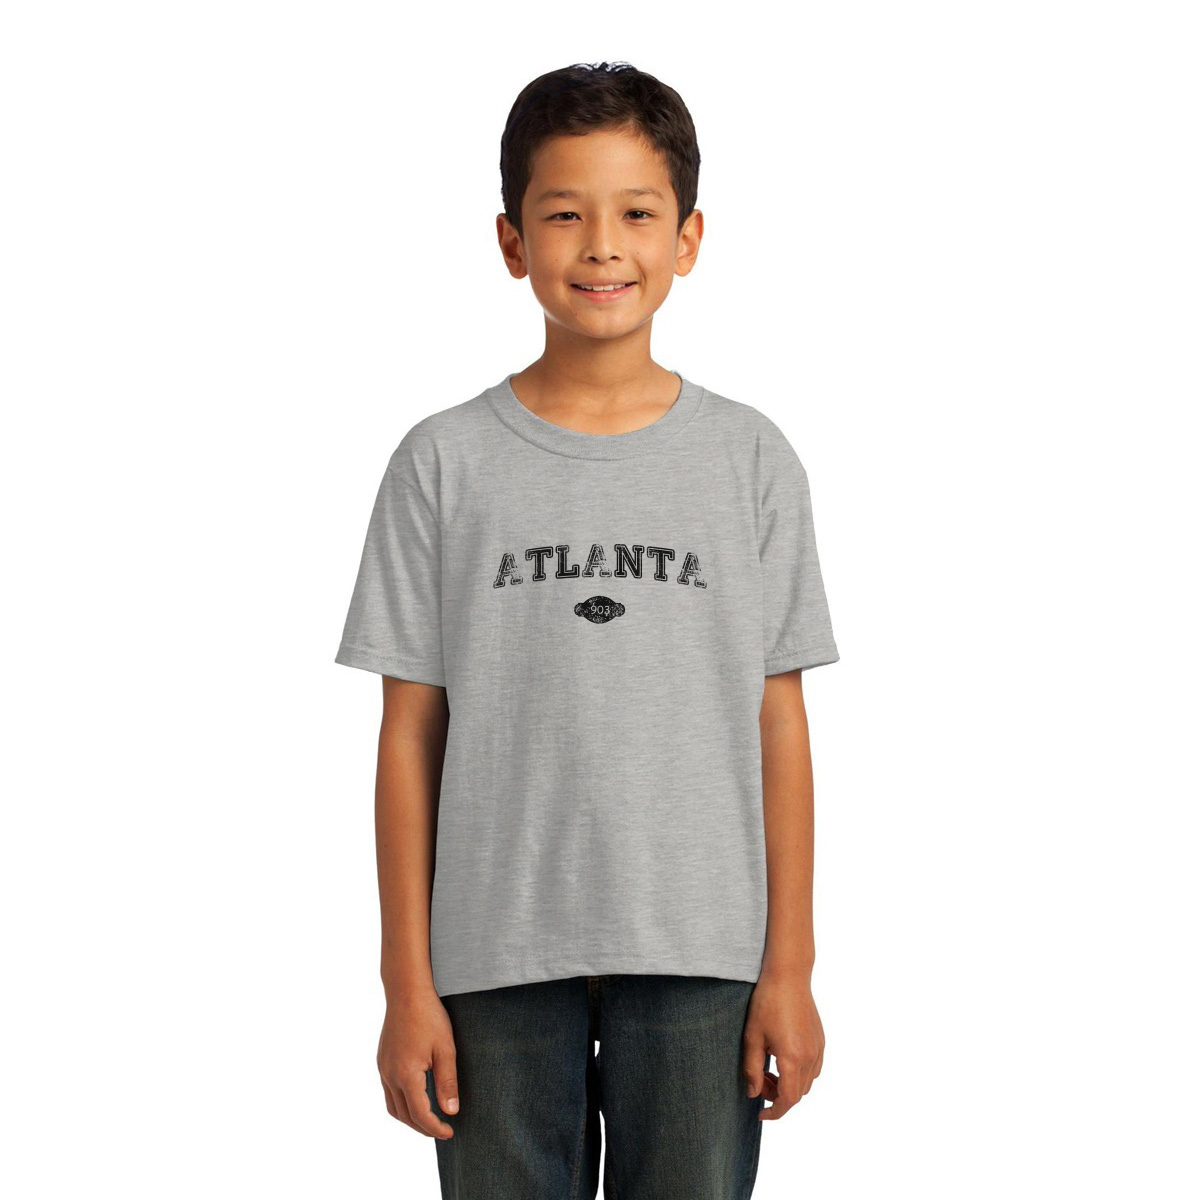 Atlanta 903 Represent Toddler T-shirt | Gray